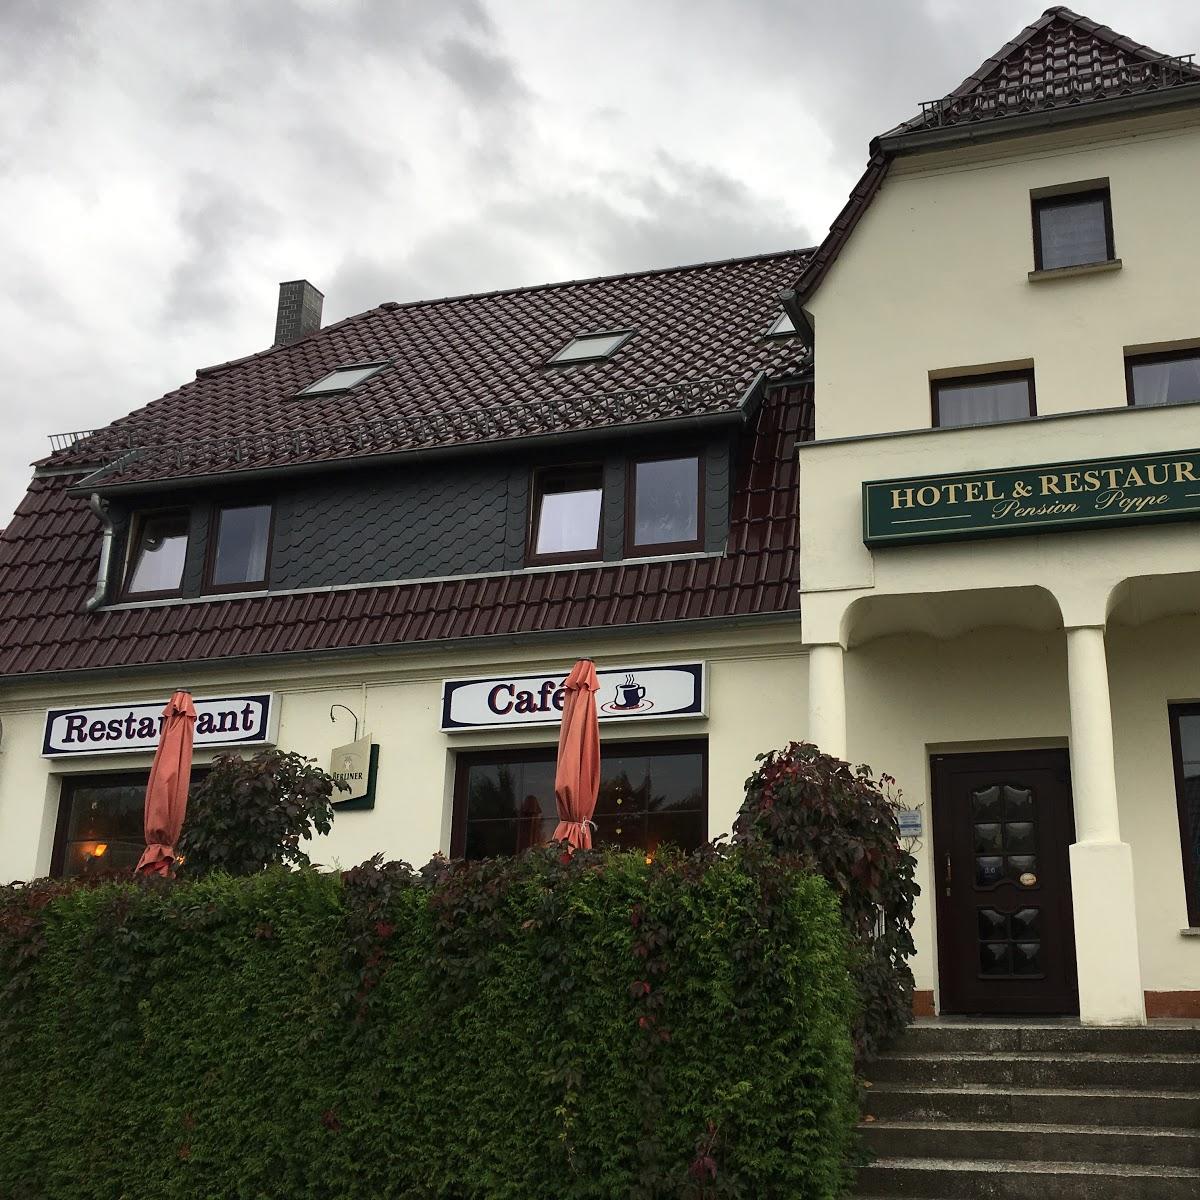 Restaurant "Hotel u. Restaurant Pension Poppe" in Schorfheide